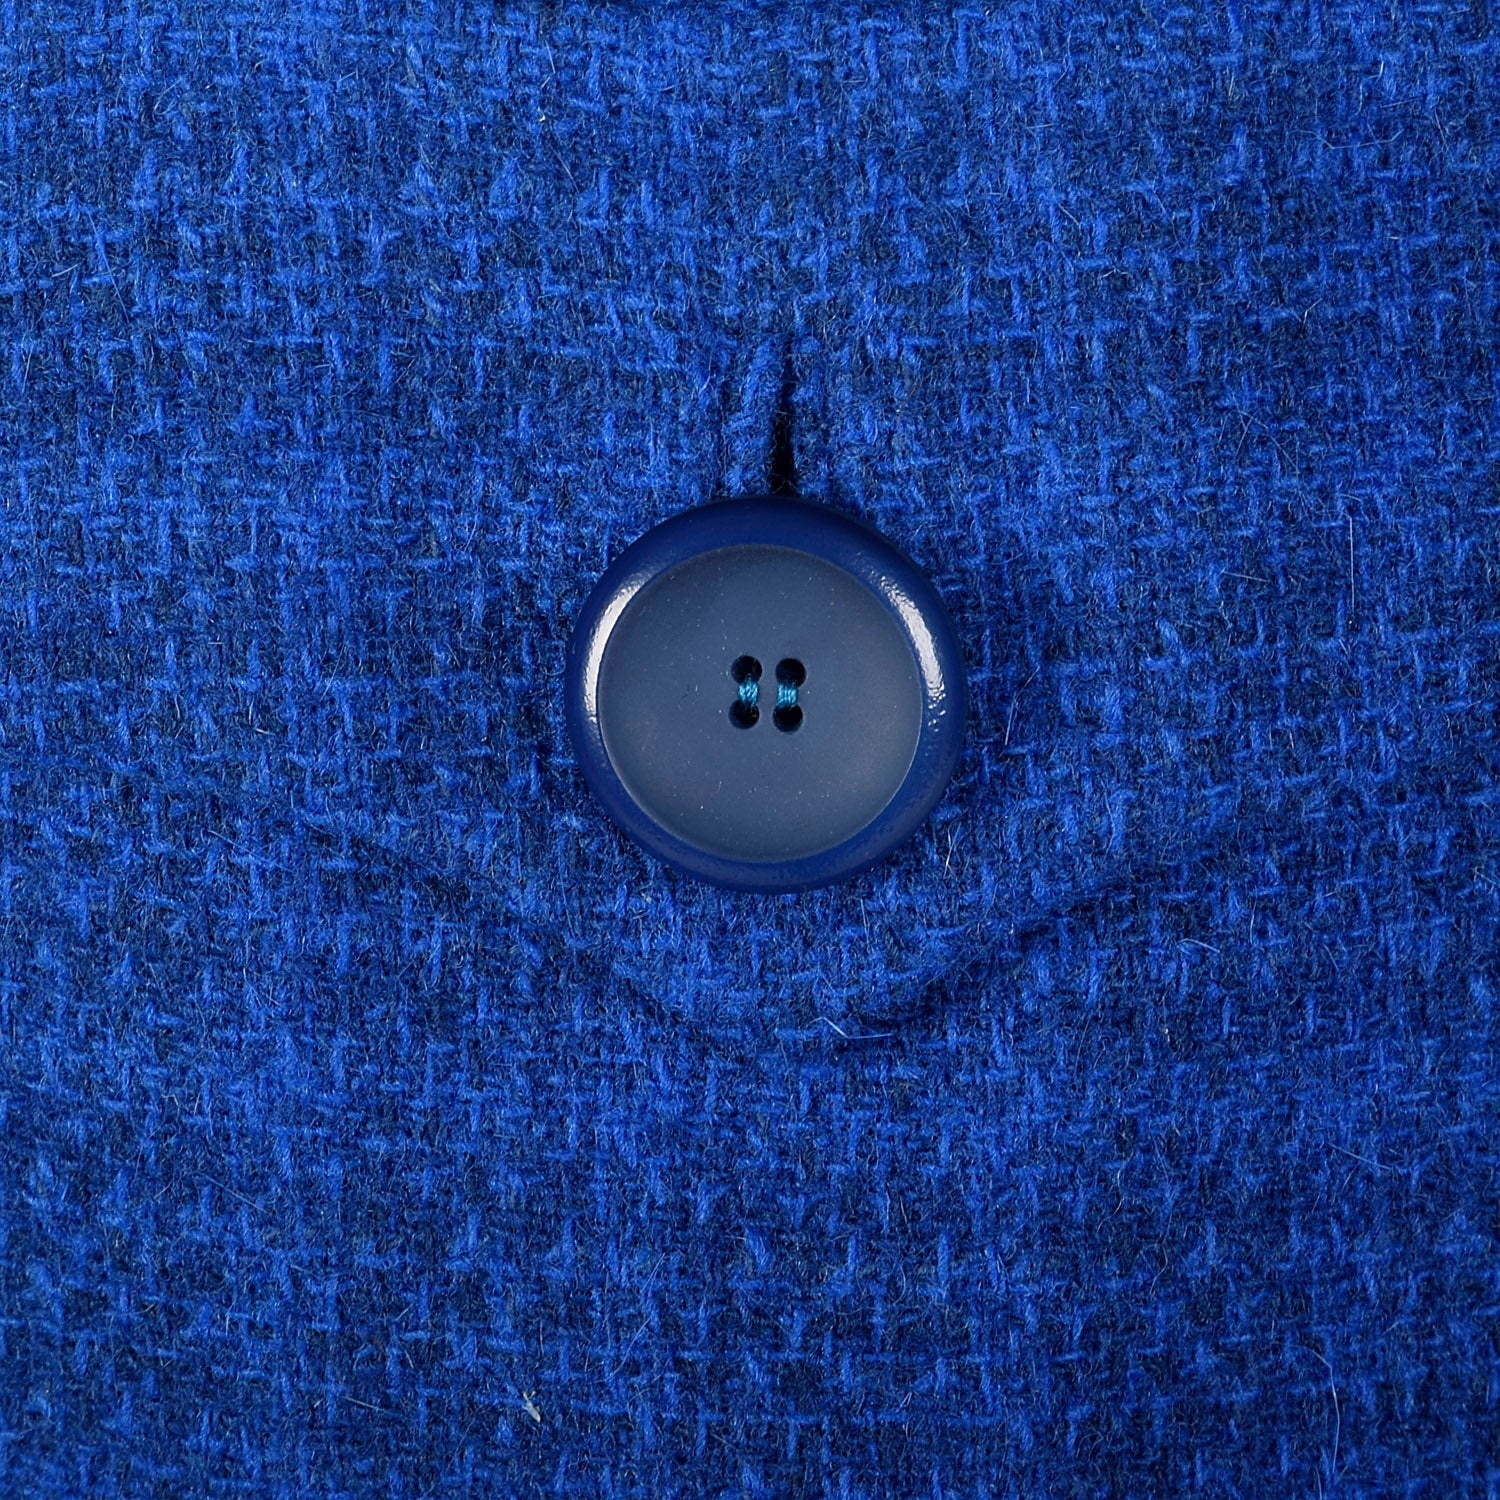 Medium 1960s Davidow Three Piece Blue Tweed Skirt Suit